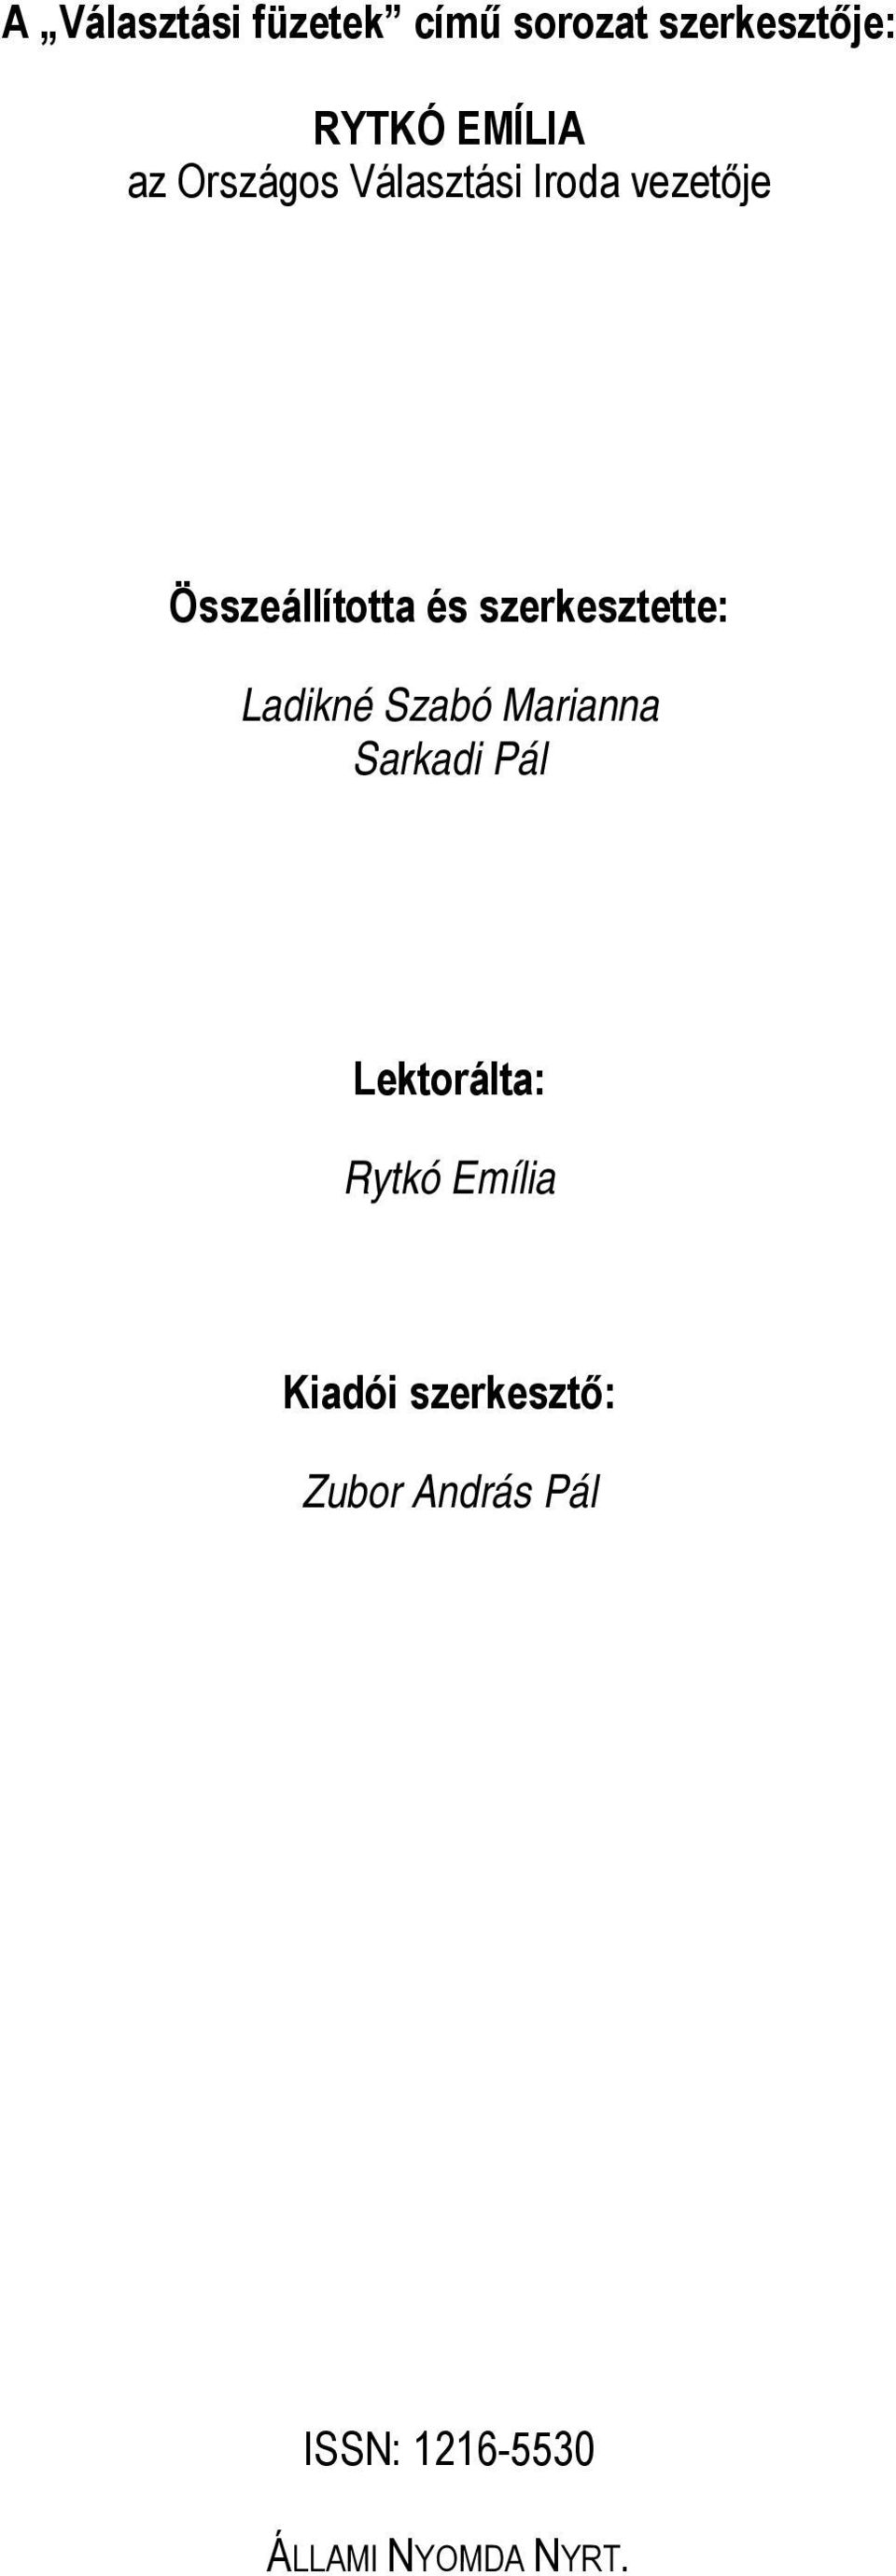 szerkesztette: Ladikné Szabó Marianna Sarkadi Pál Lektorálta: